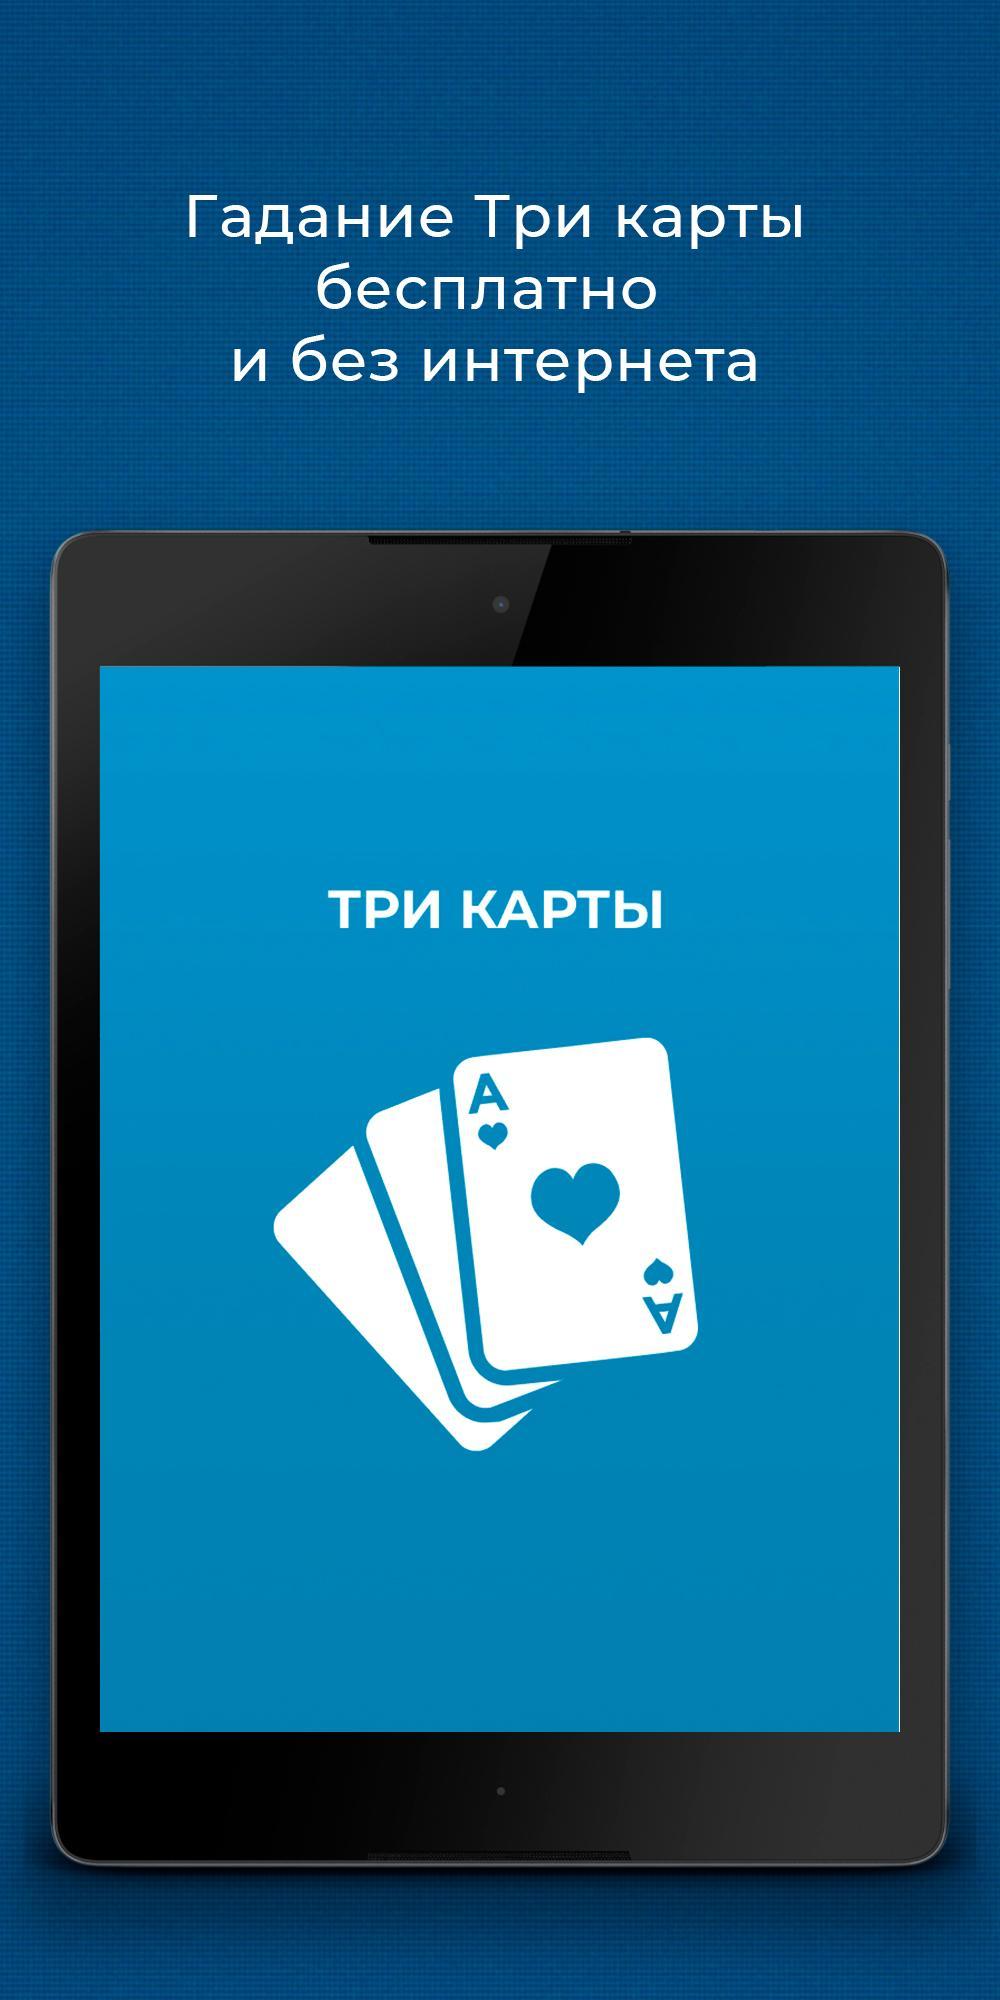 Карты гадание играть бесплатно прохождение карт в майнкрафт с мистиком и лагером играть онлайн